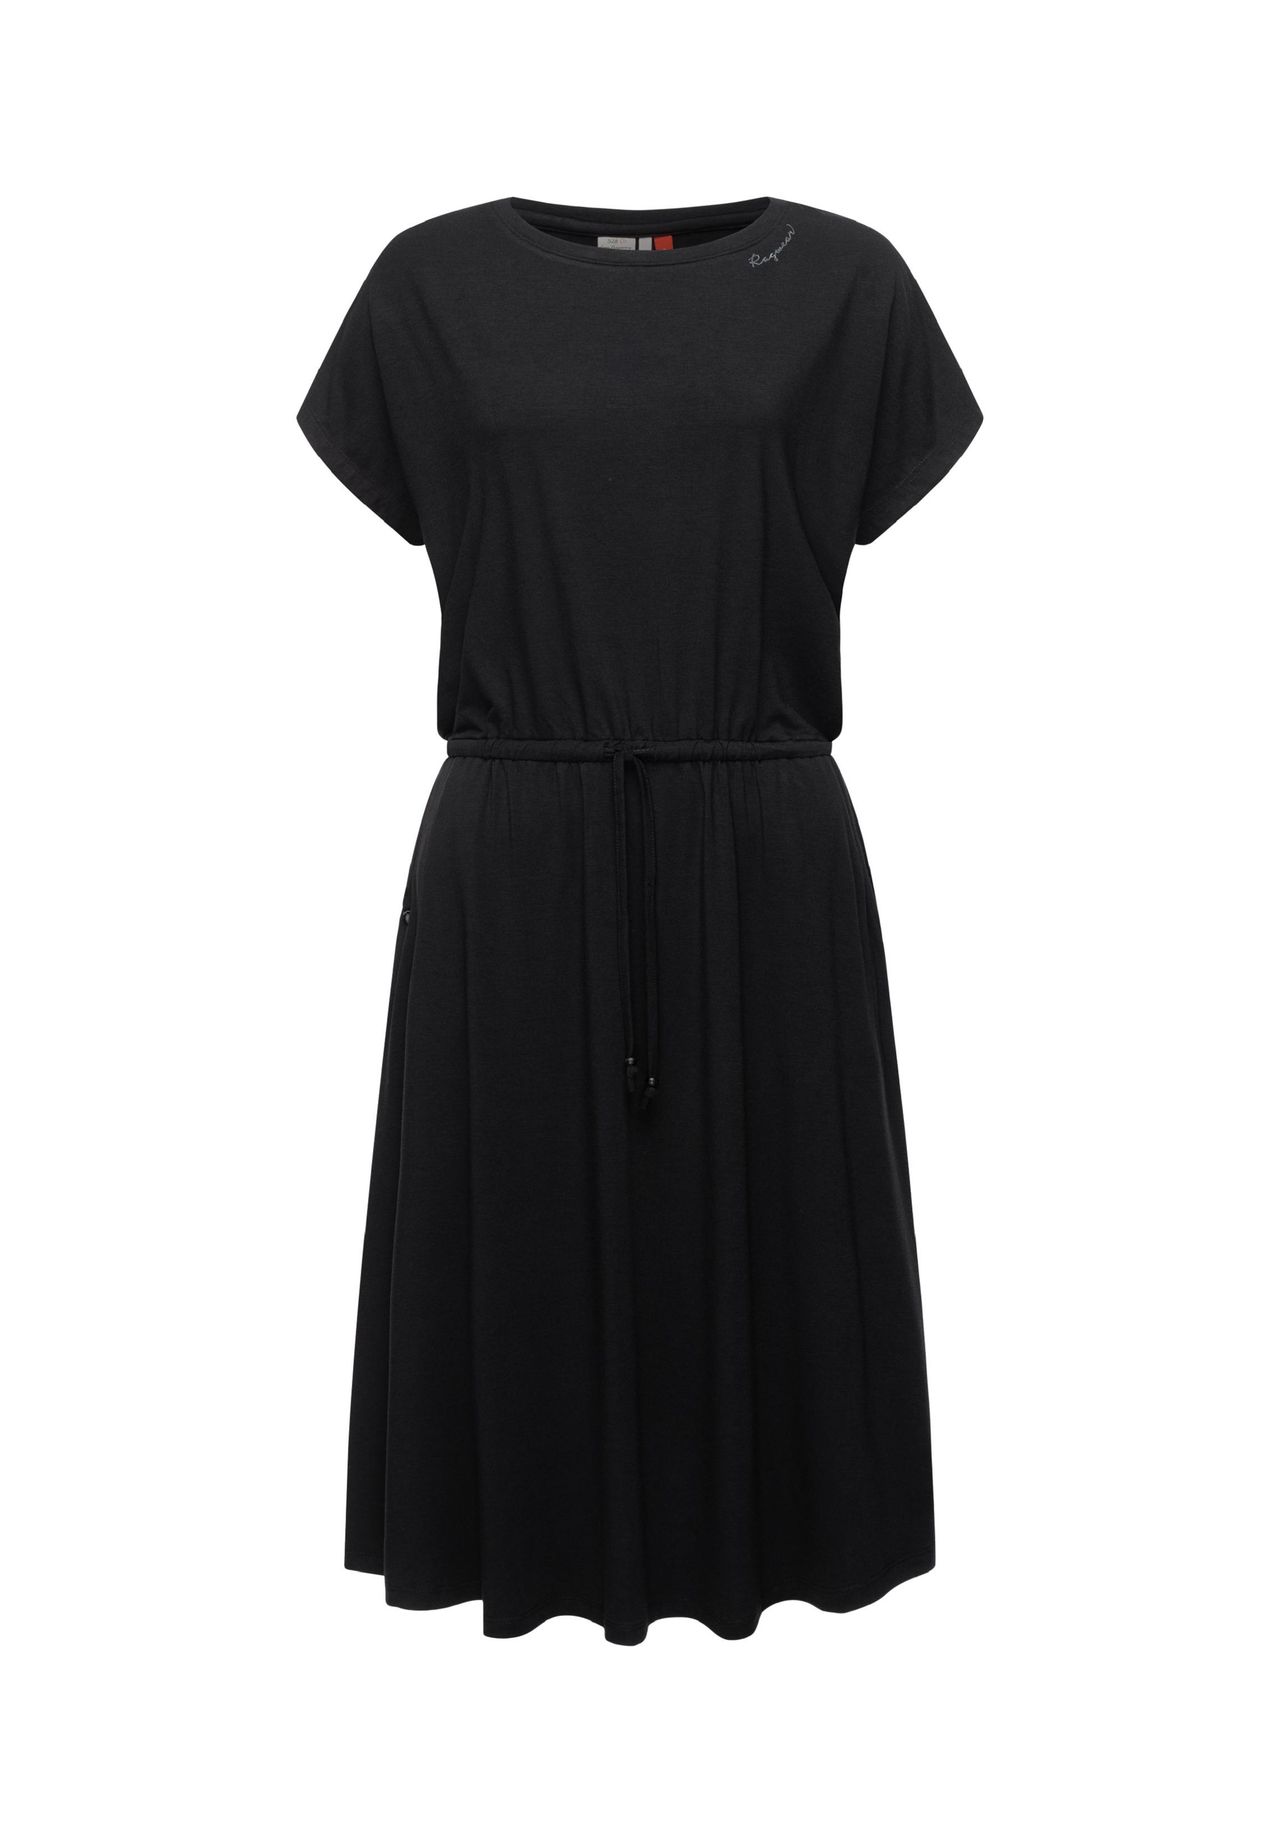 Kleid schwarz knielang kurzarm kaufen | GALERIA